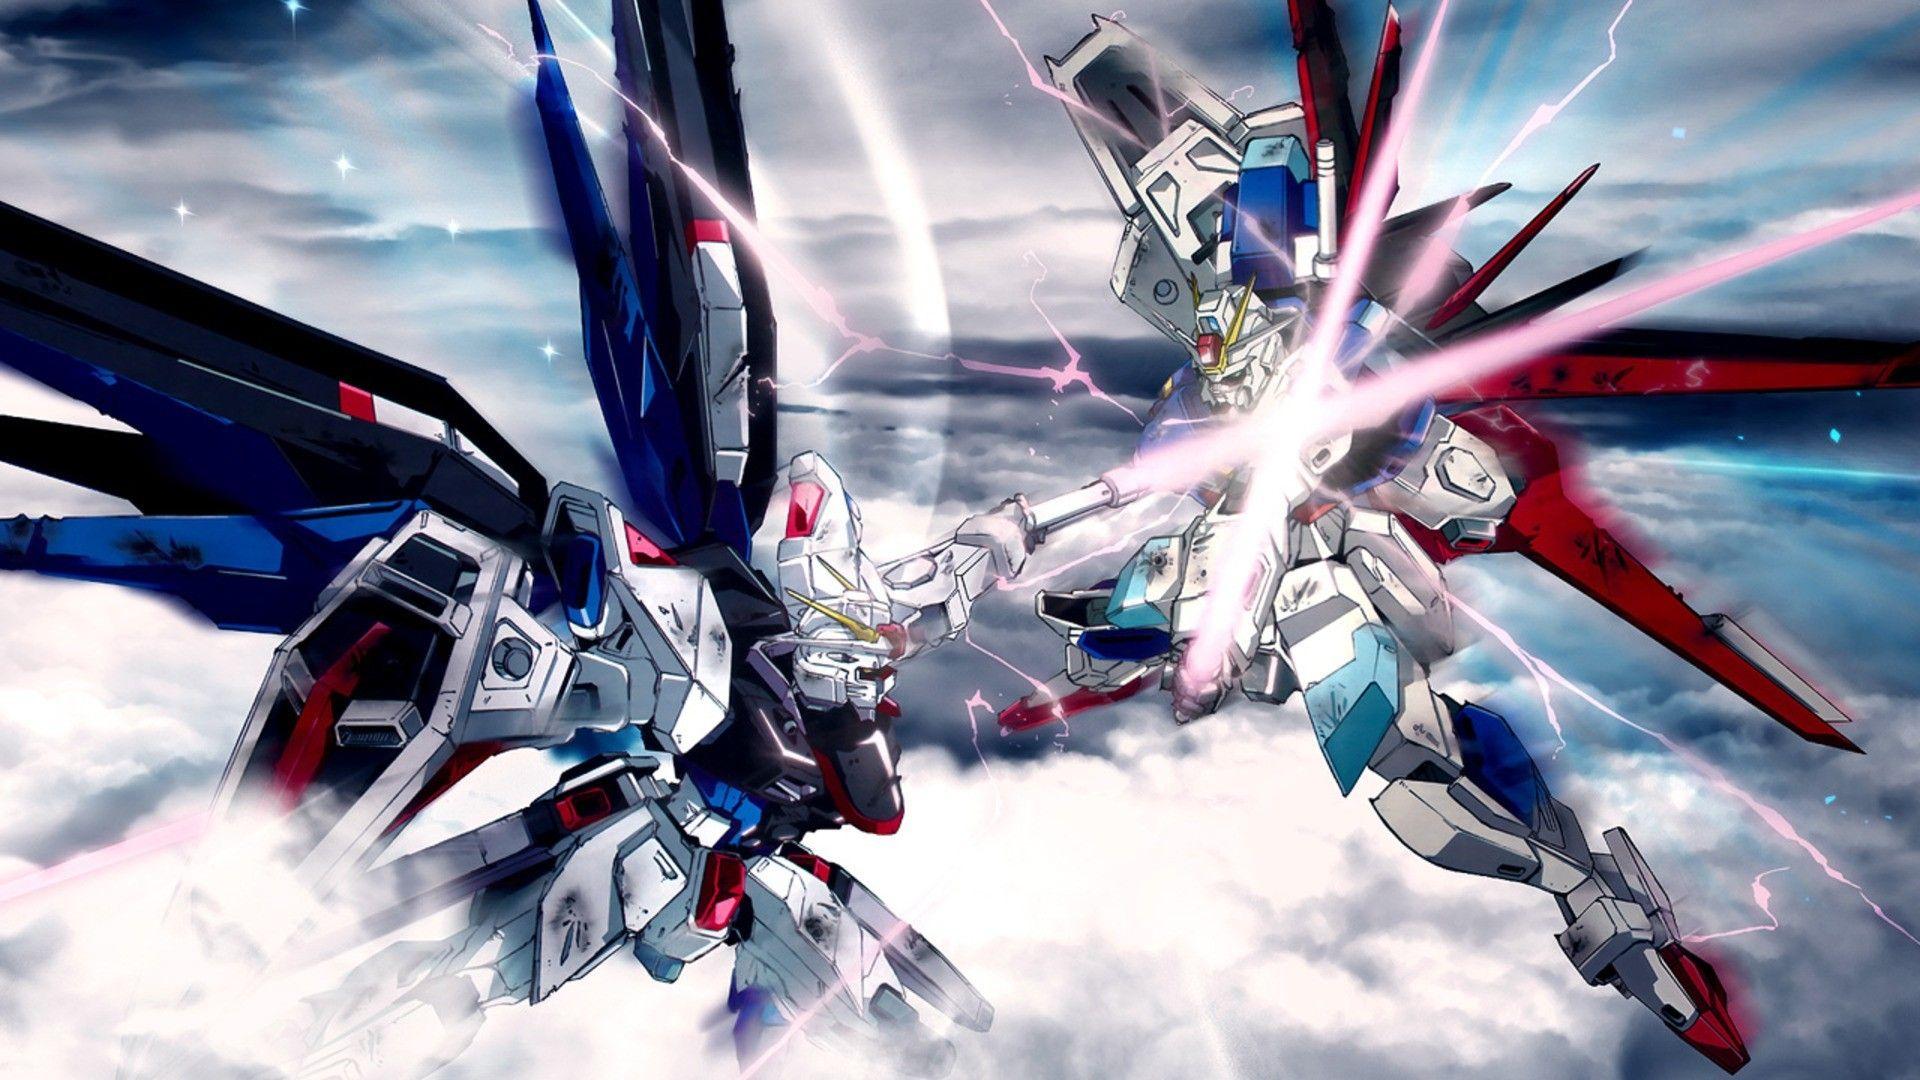 Gundam Desktop Wallpapers Top Free Gundam Desktop Backgrounds Wallpaperaccess